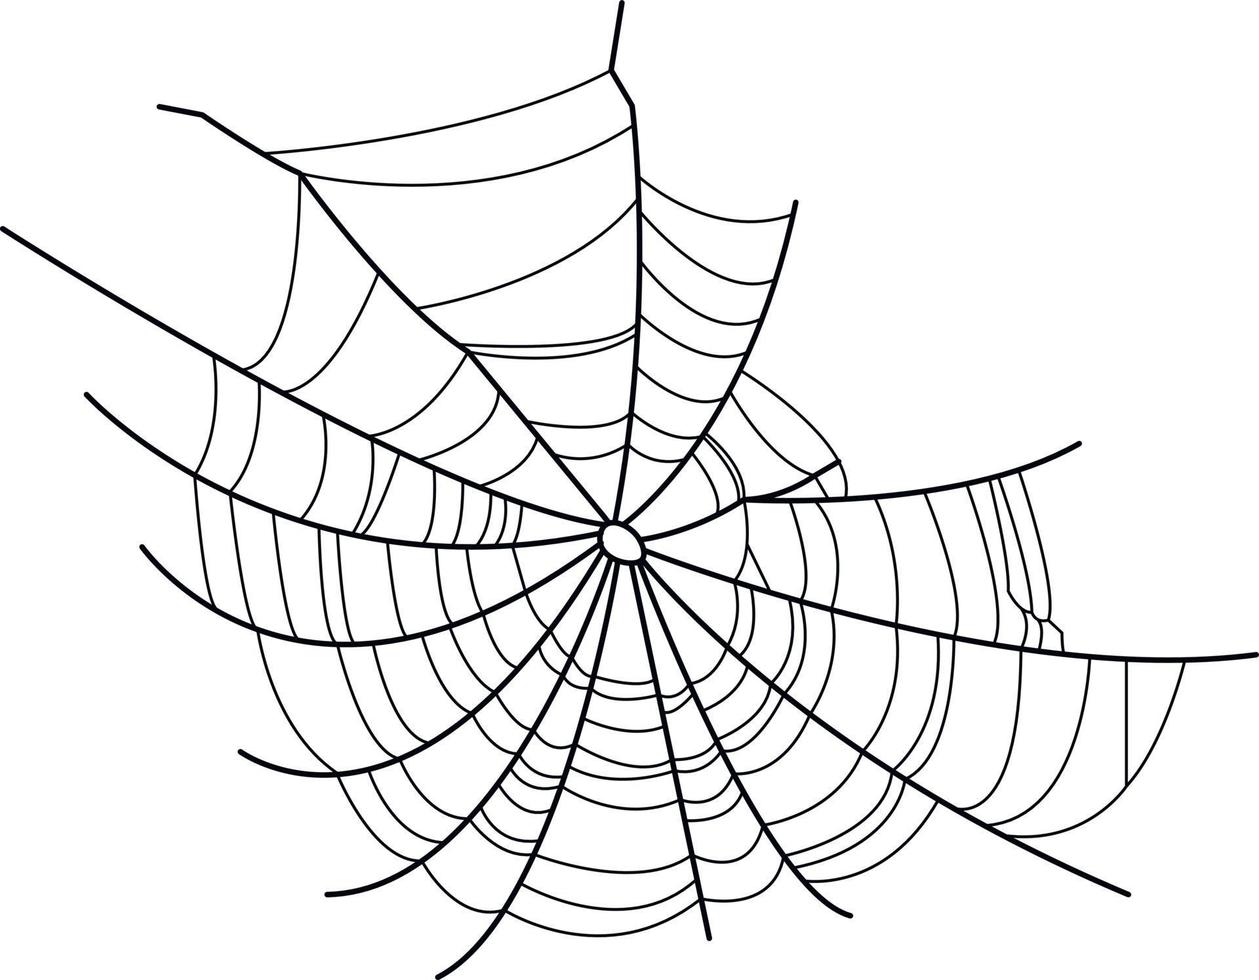 imagem vetorial de uma teia de aranha. teia de aranha sem aranha. vetor